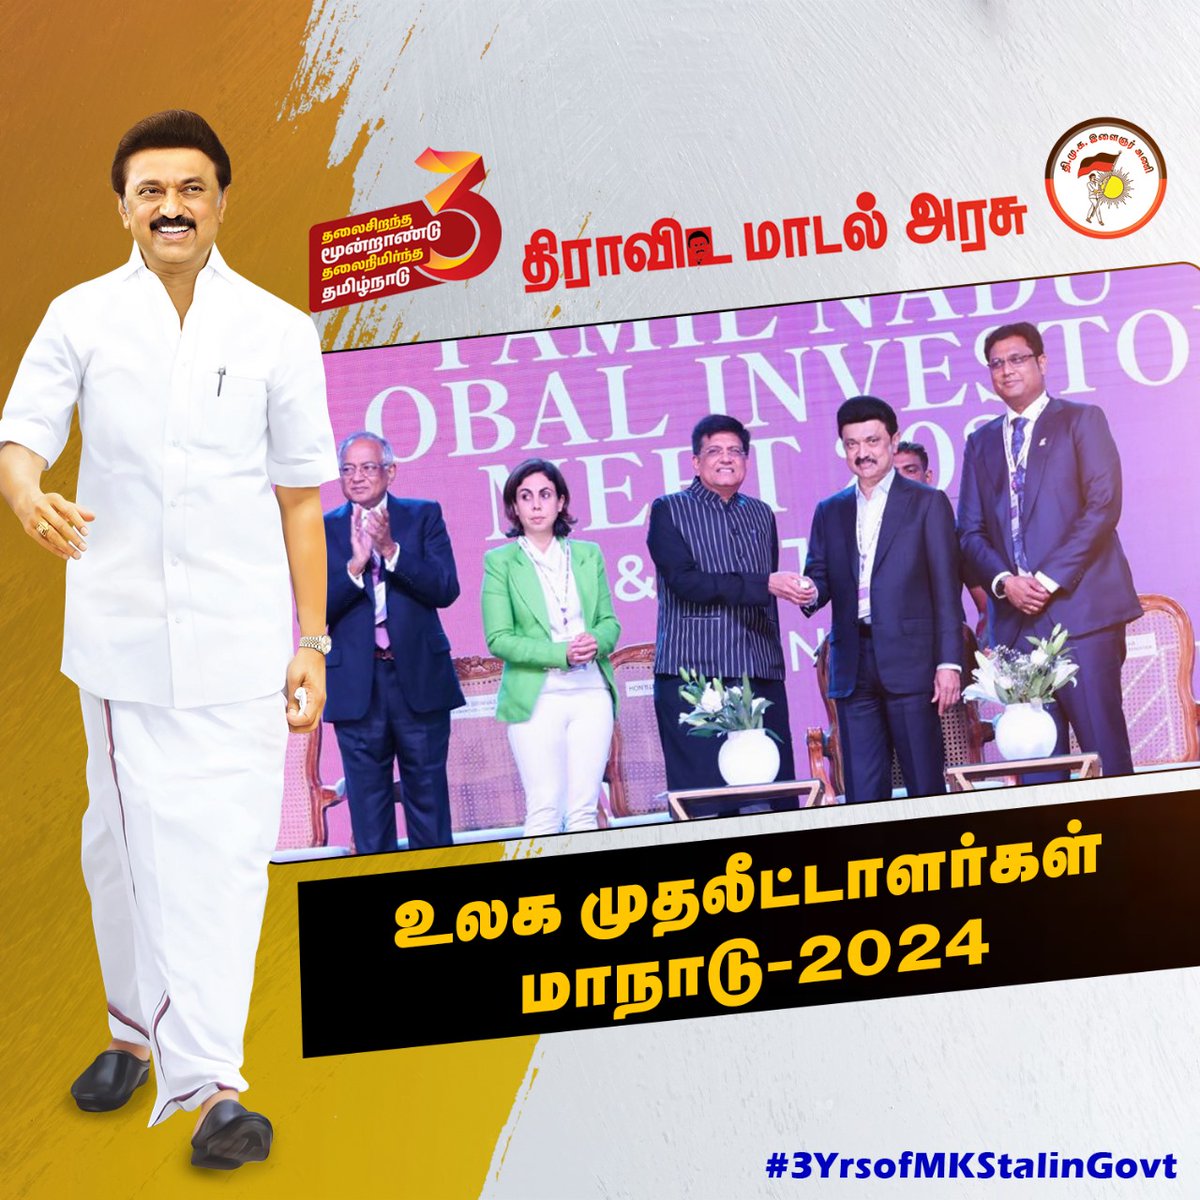 உலக முதலீட்டாளர்கள் மாநாடு- 2024

#3YrsofMKStalinGovt 
#DravidaModel